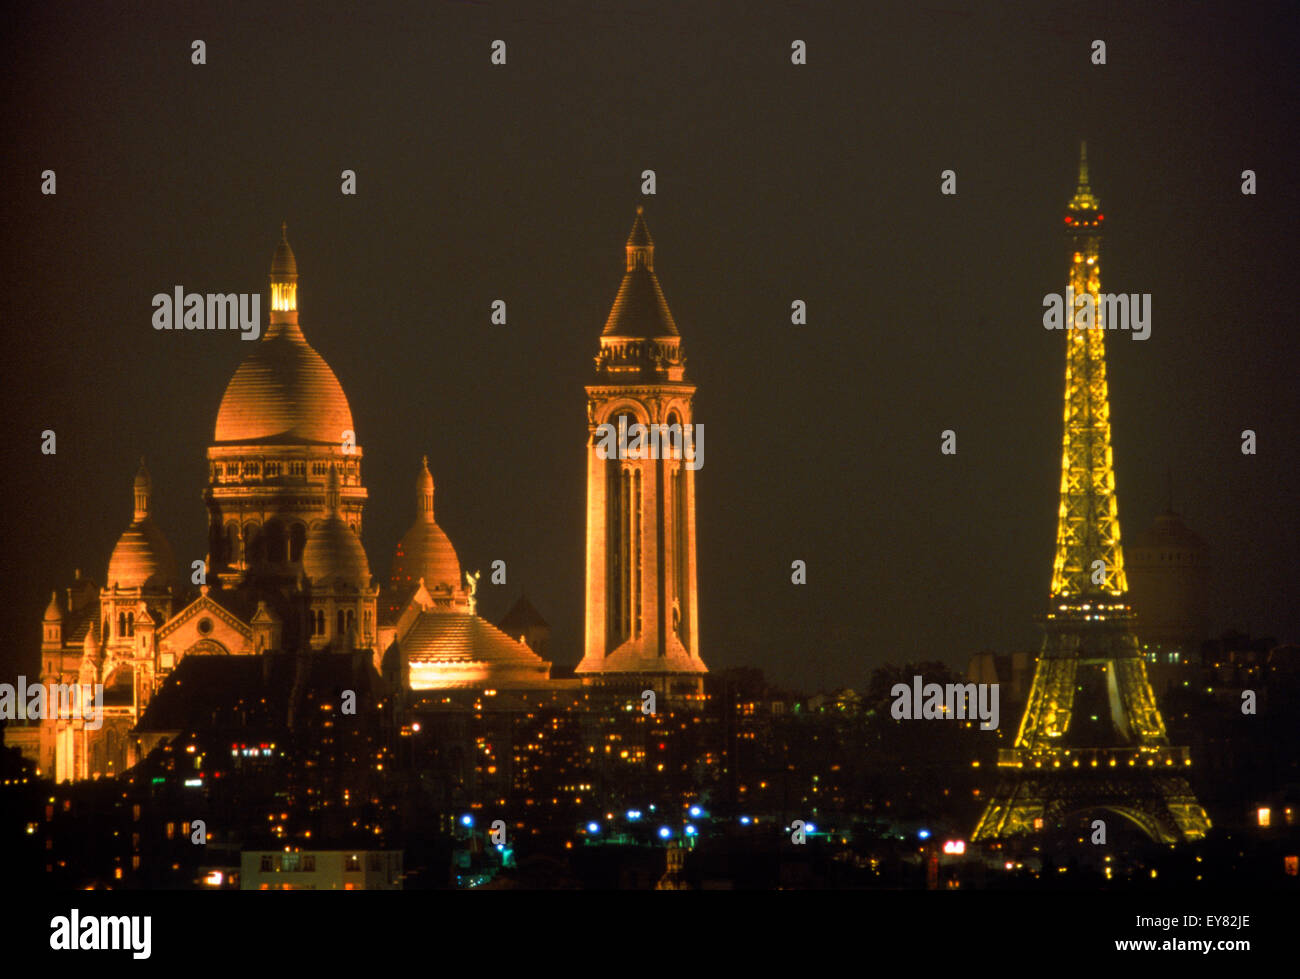 Sacré-cœur et la Tour Eiffel au-dessus de toits de Paris la nuit Banque D'Images